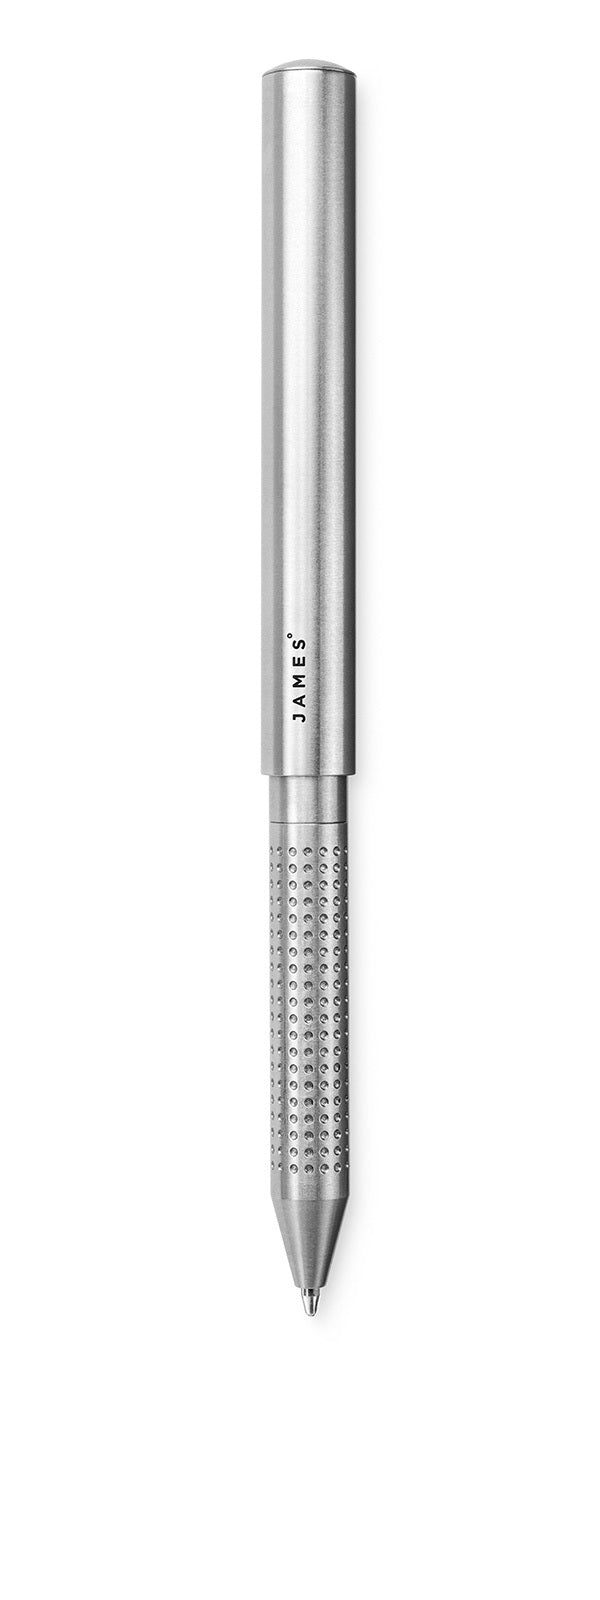 Stilwell pen full length exterior image.